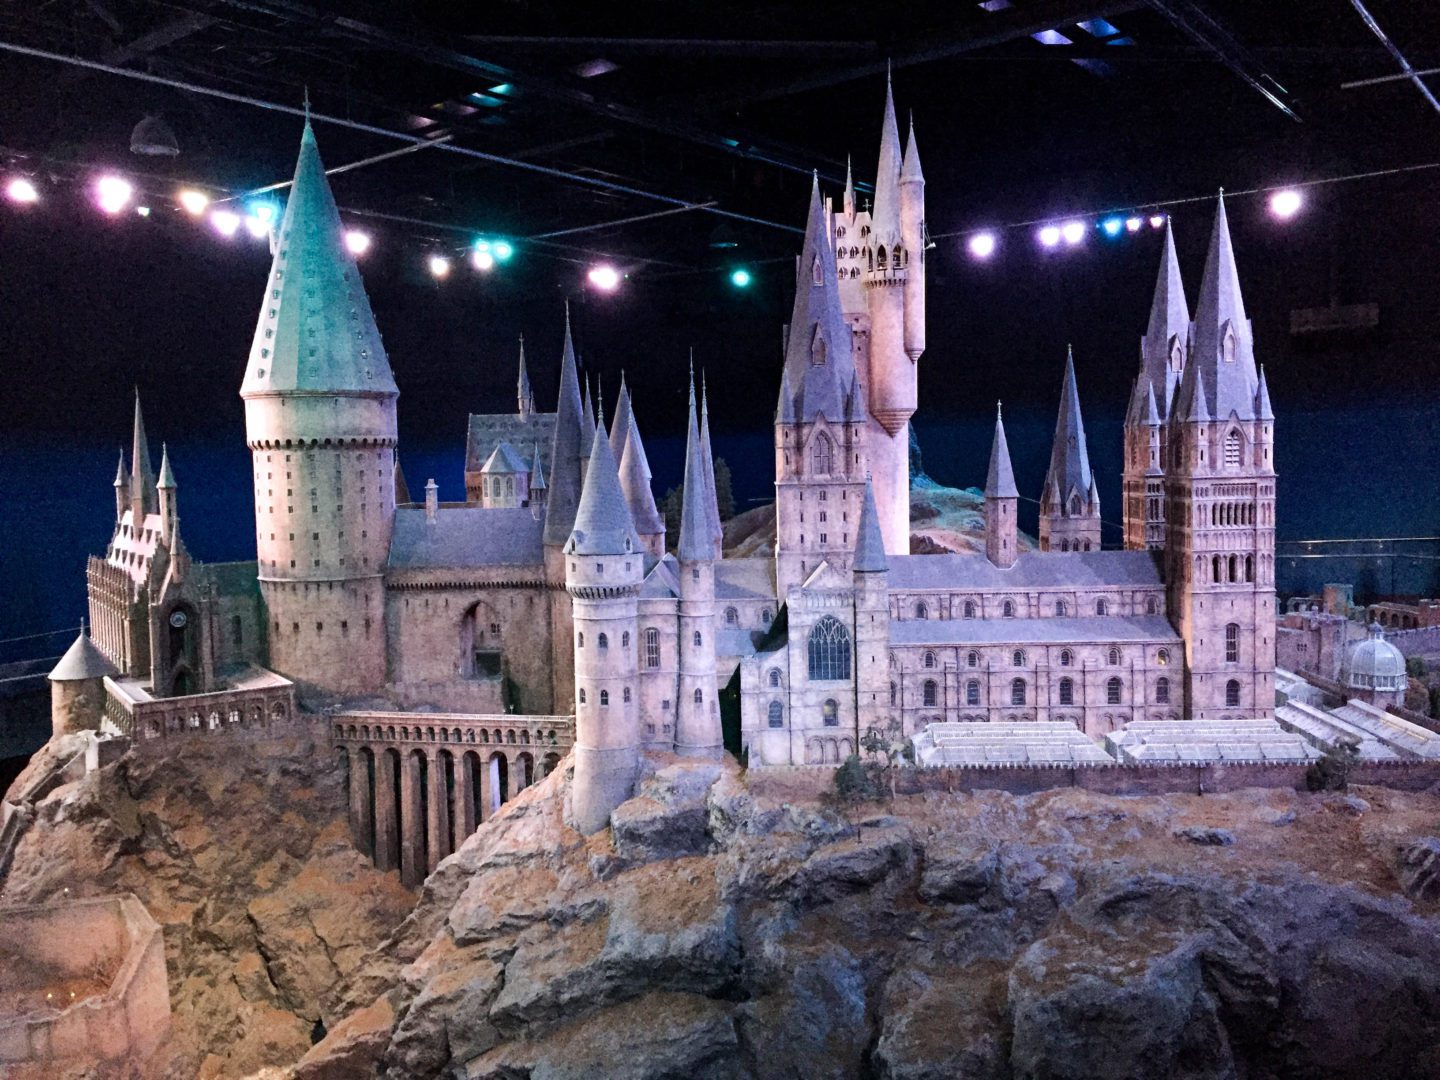 Harry Potter Studio Tour, Hogwarts Castle